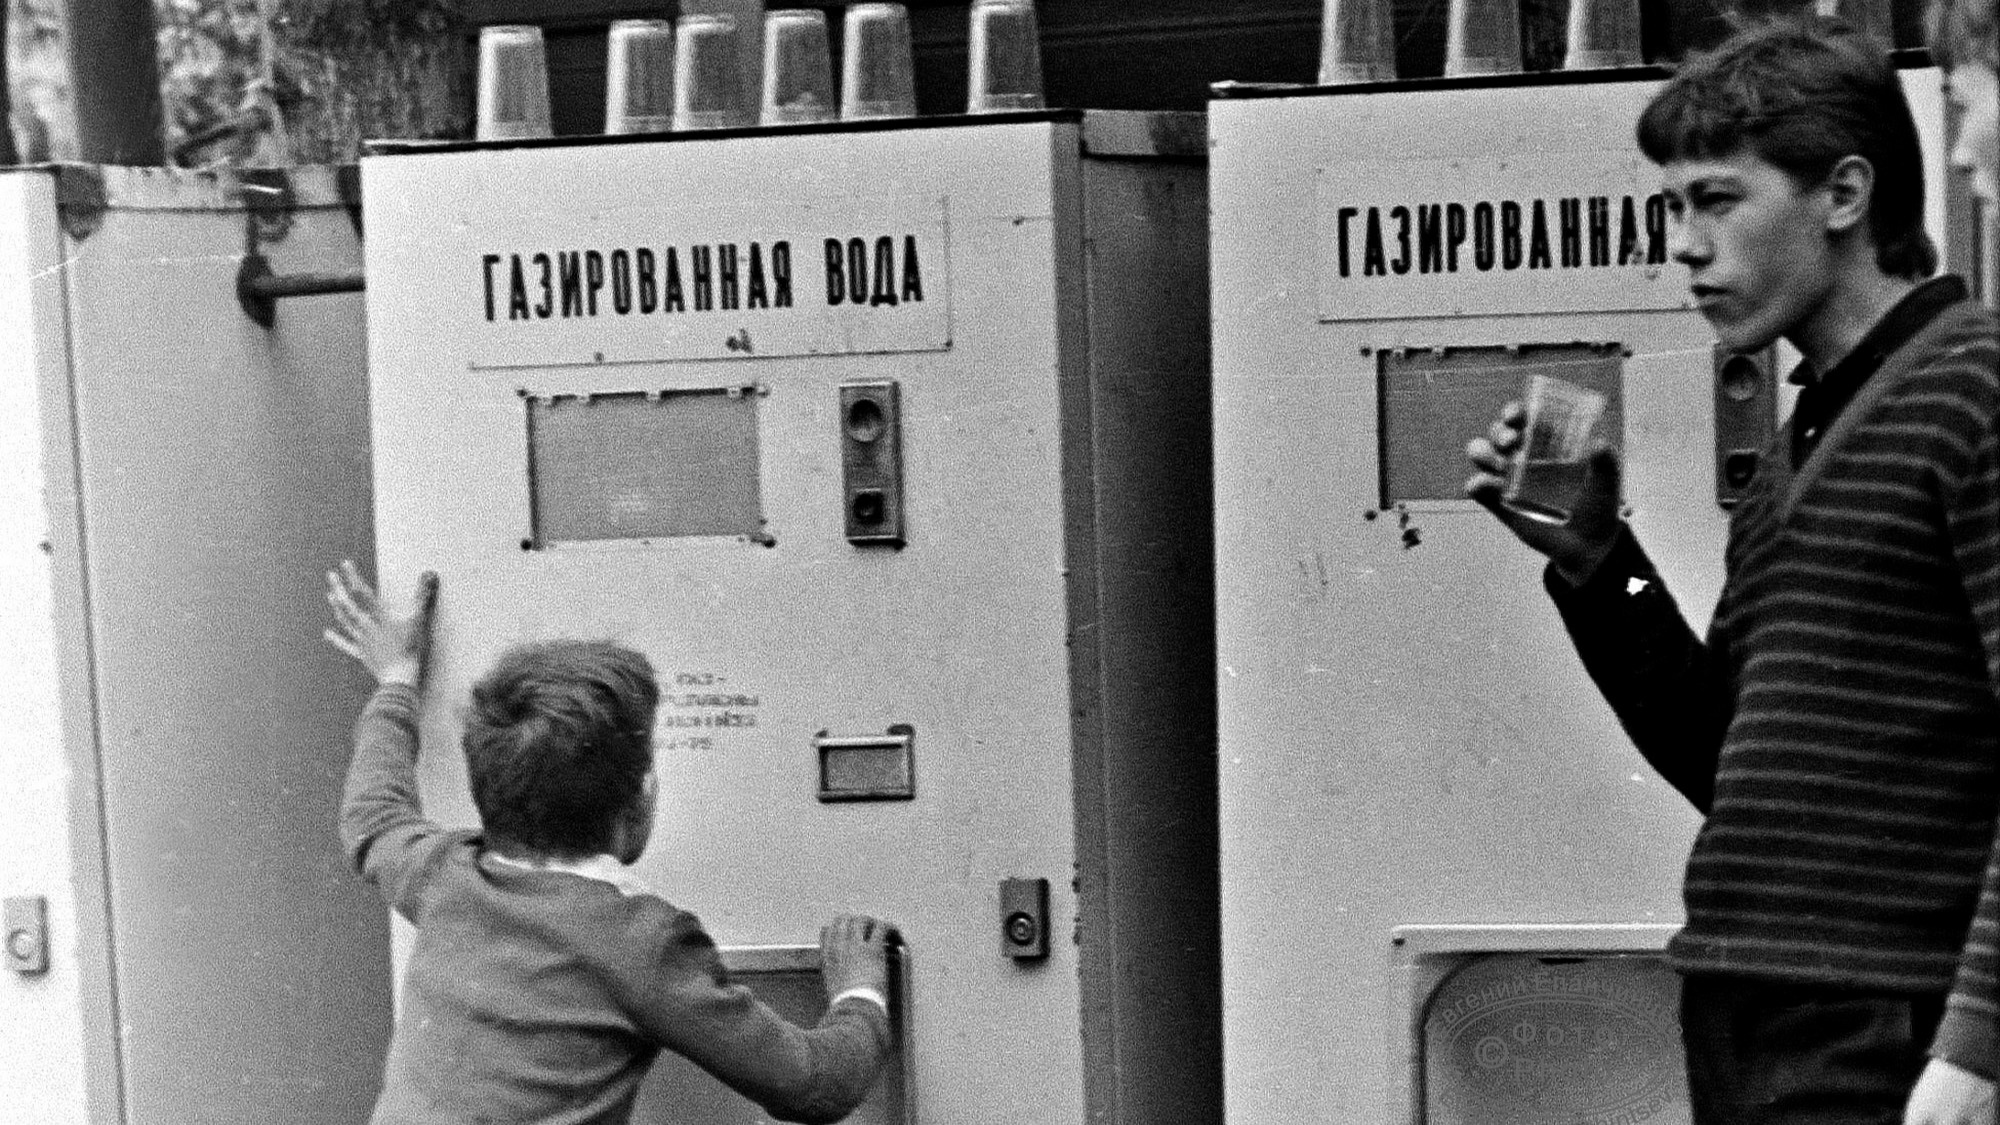 Пили из одного стакана и не брезговали. Какими были советские автоматы с газировкой в Чите?